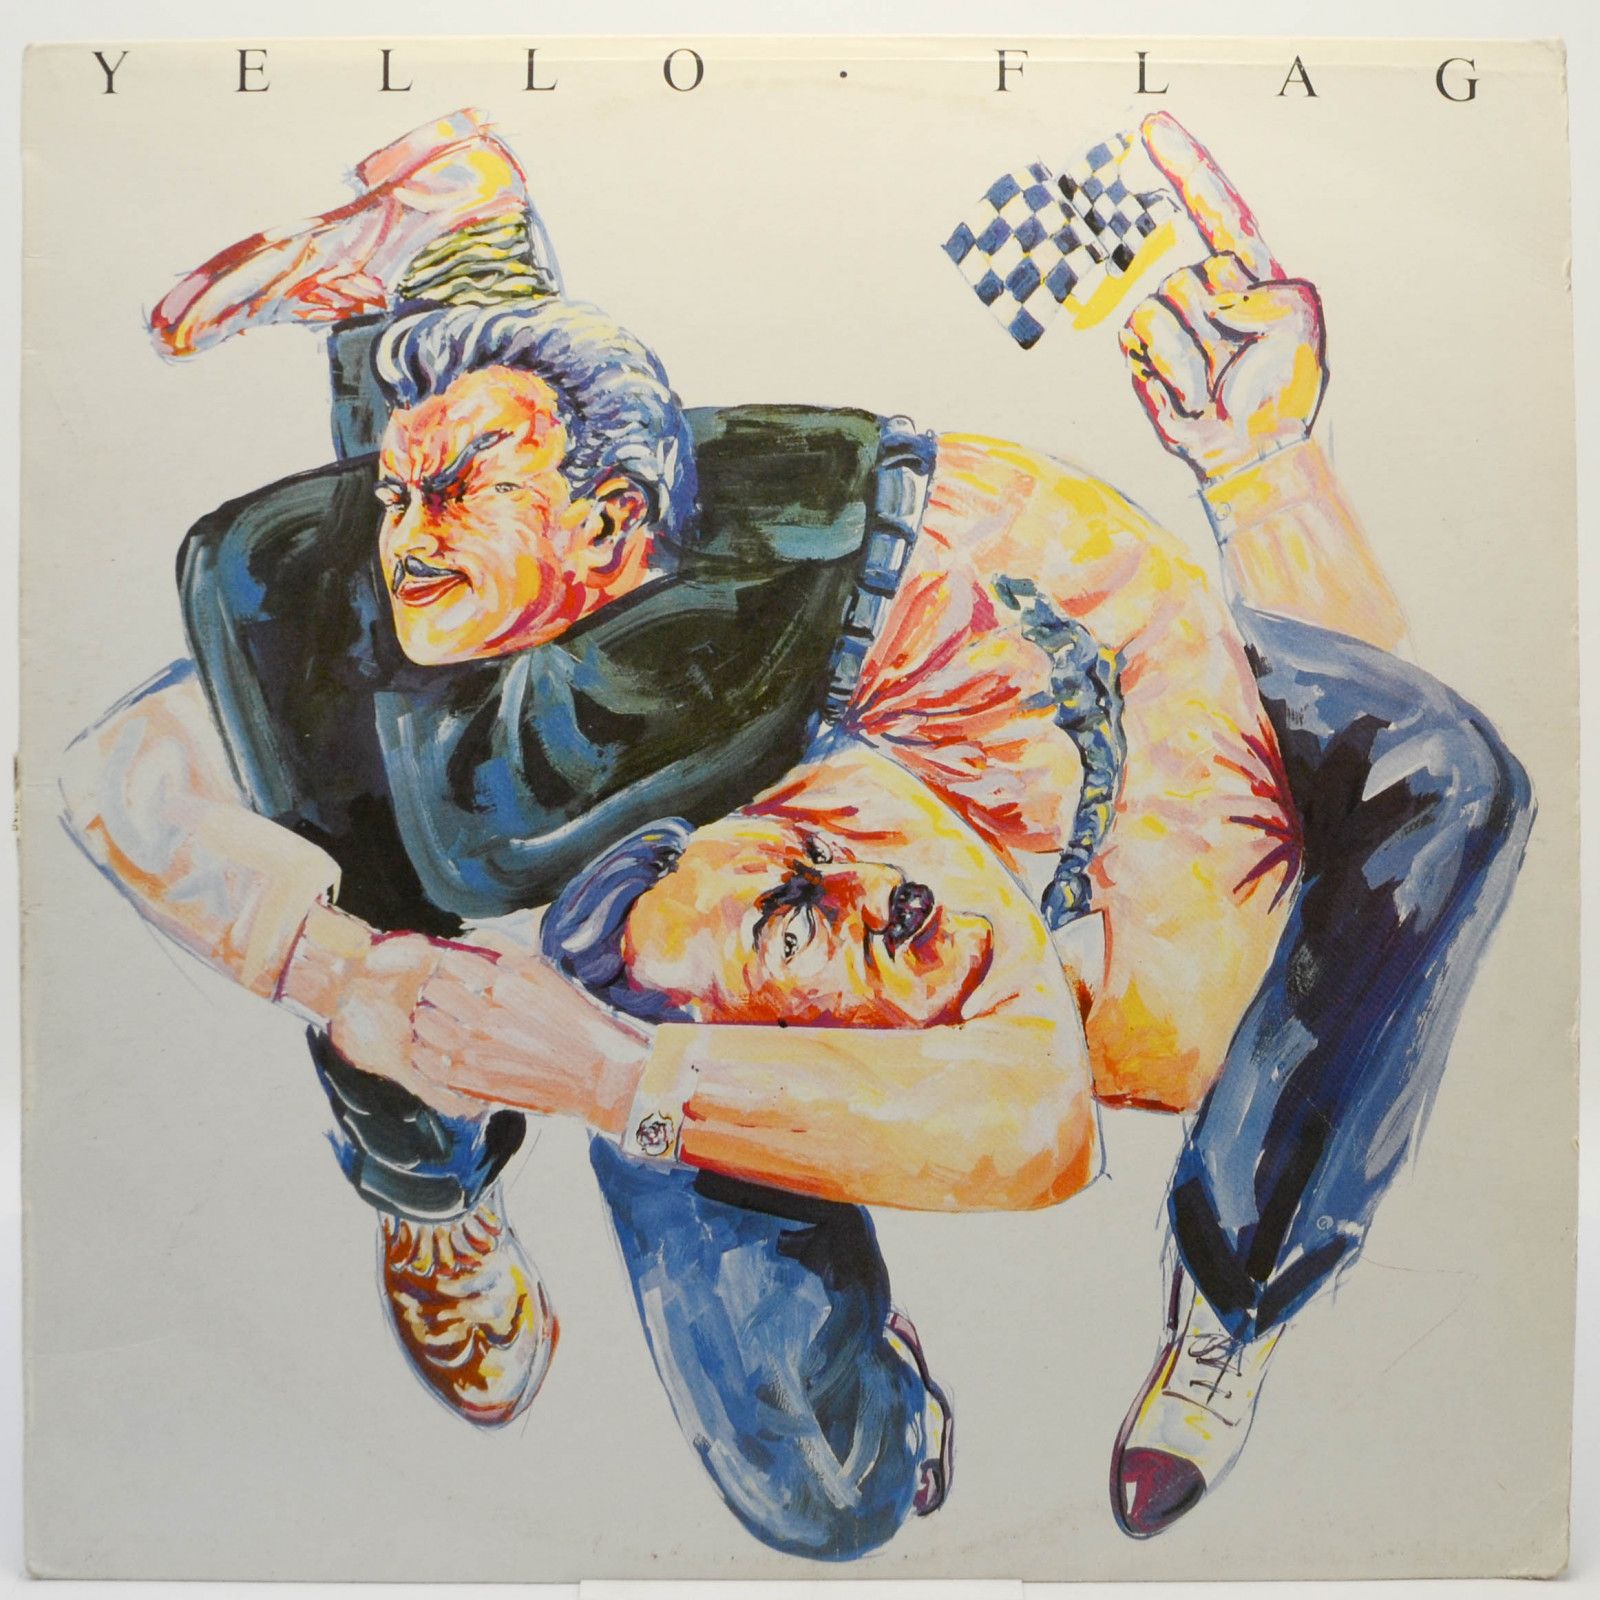 Yello — Flag, 1989